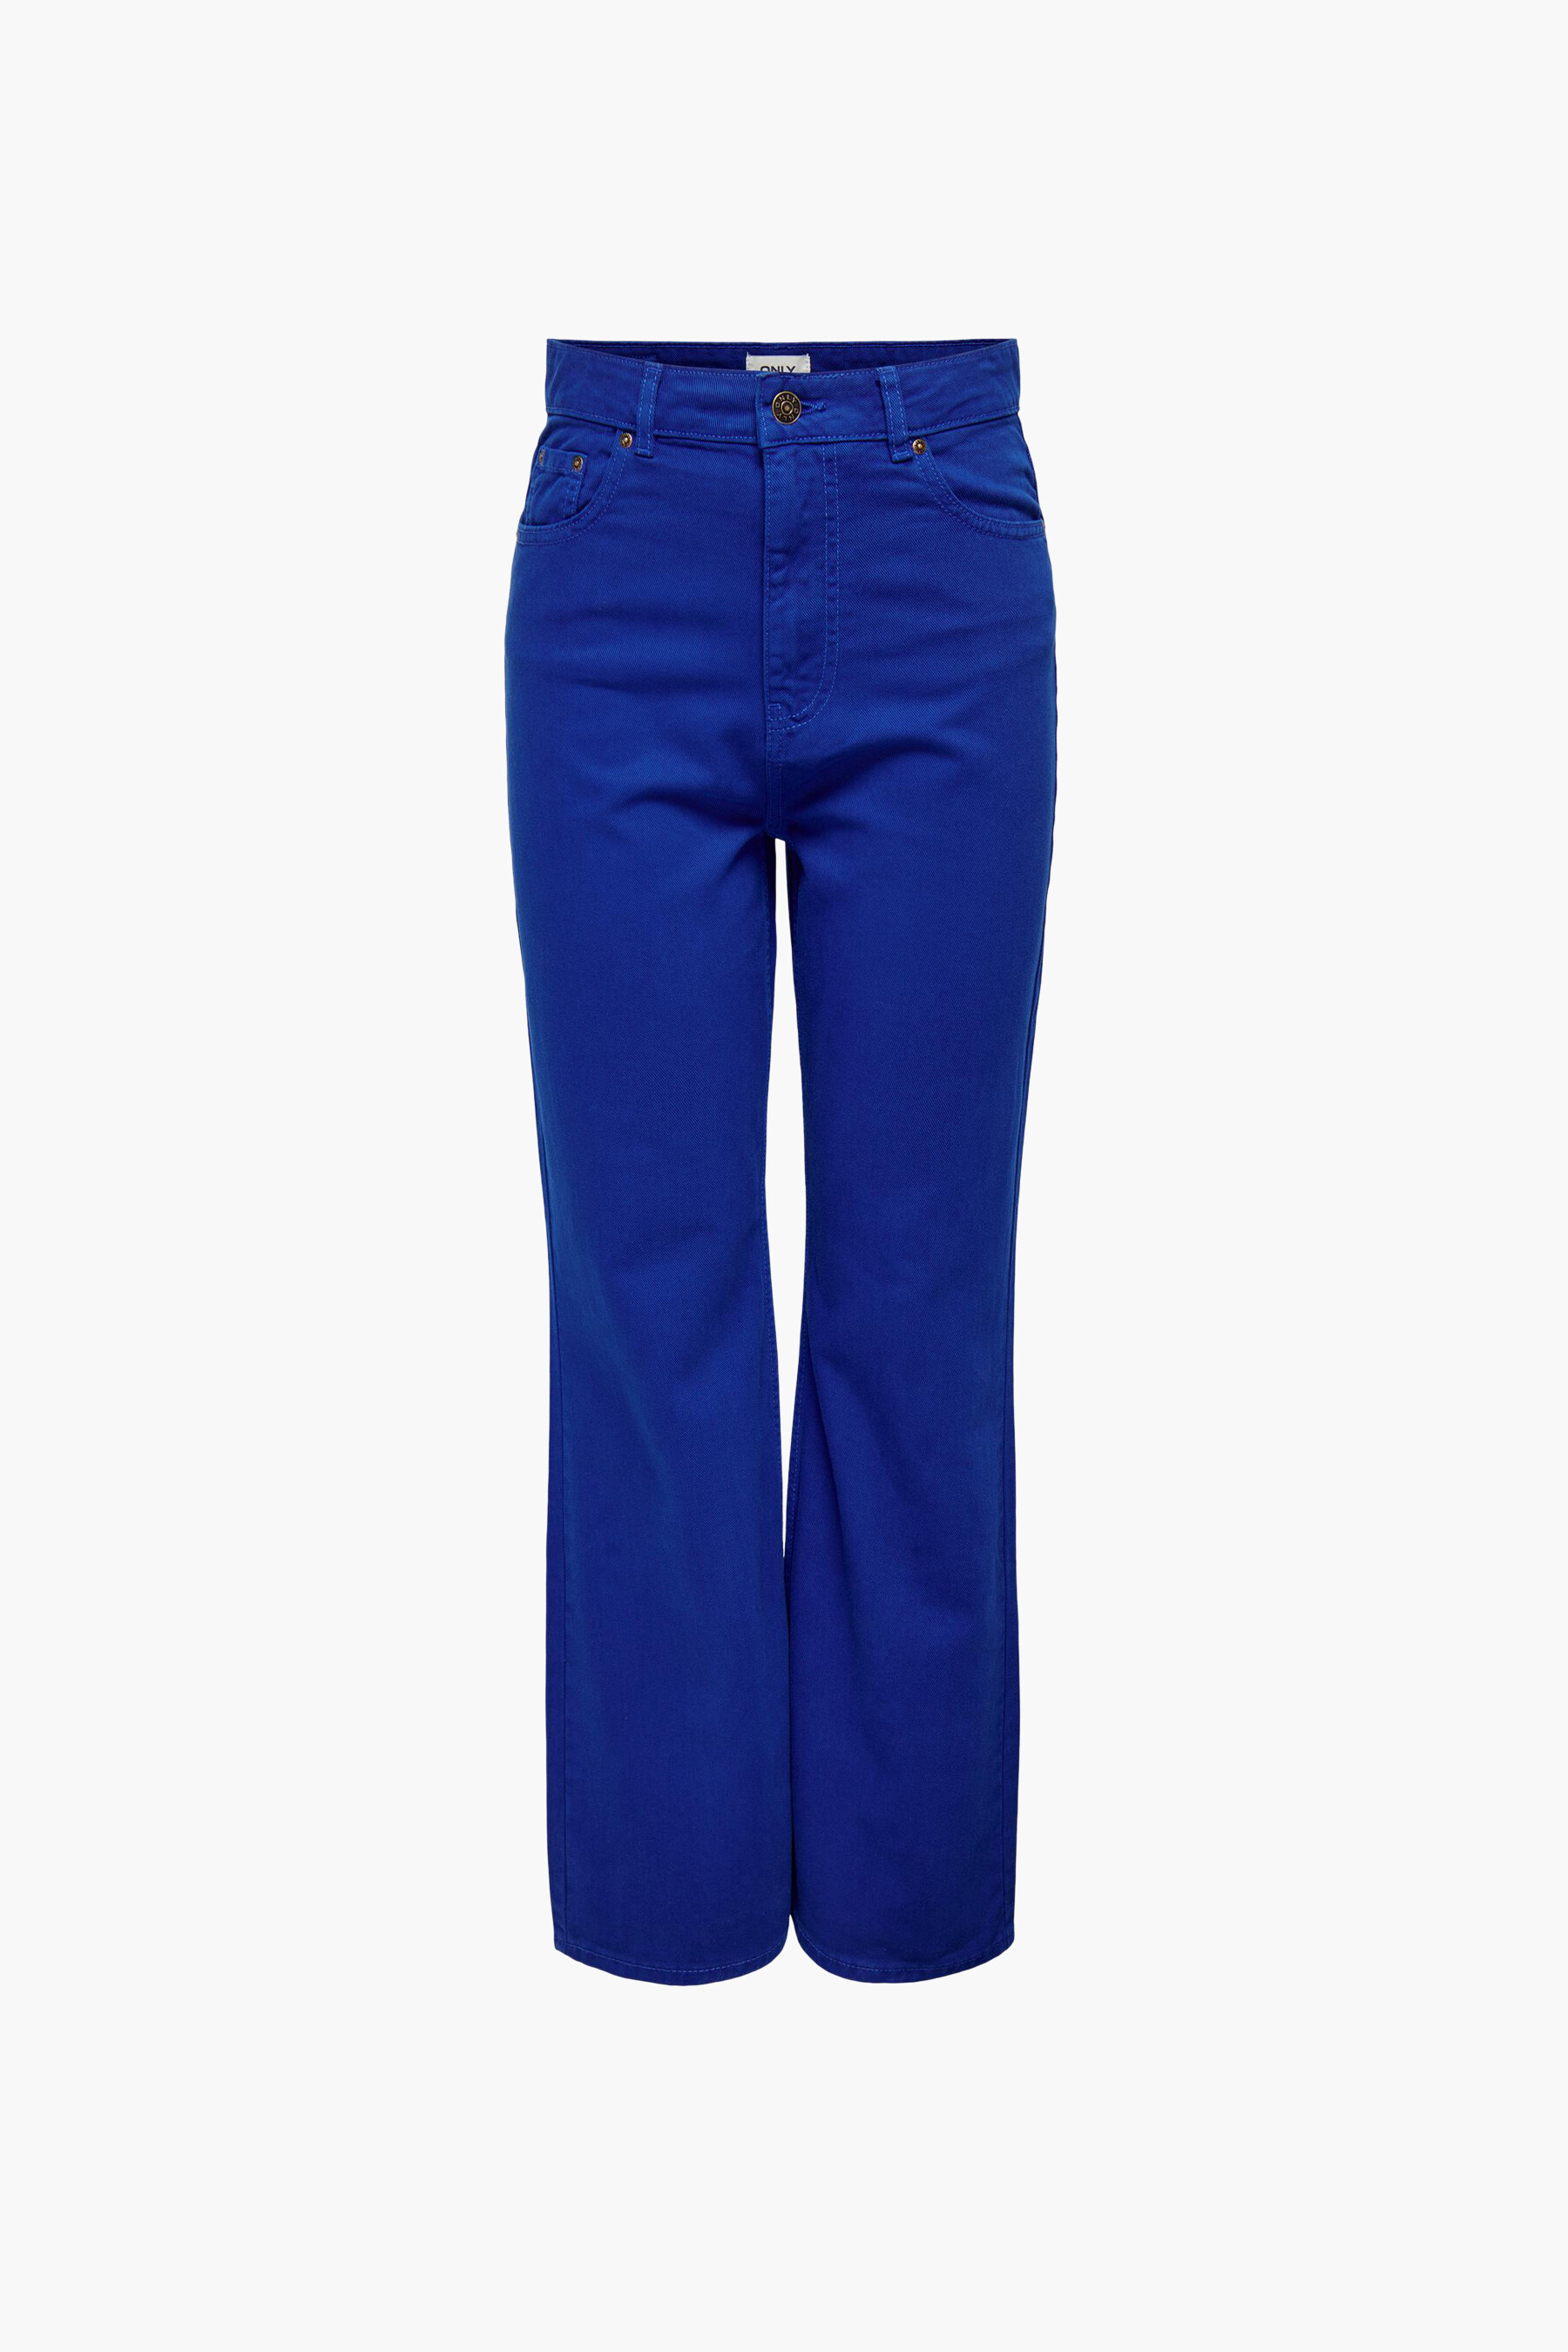 pantalons en chinos voor Lange broeken Fila Blouse 687694 in het Blauw Bespaar 6% Dames Kleding voor voor Broeken 